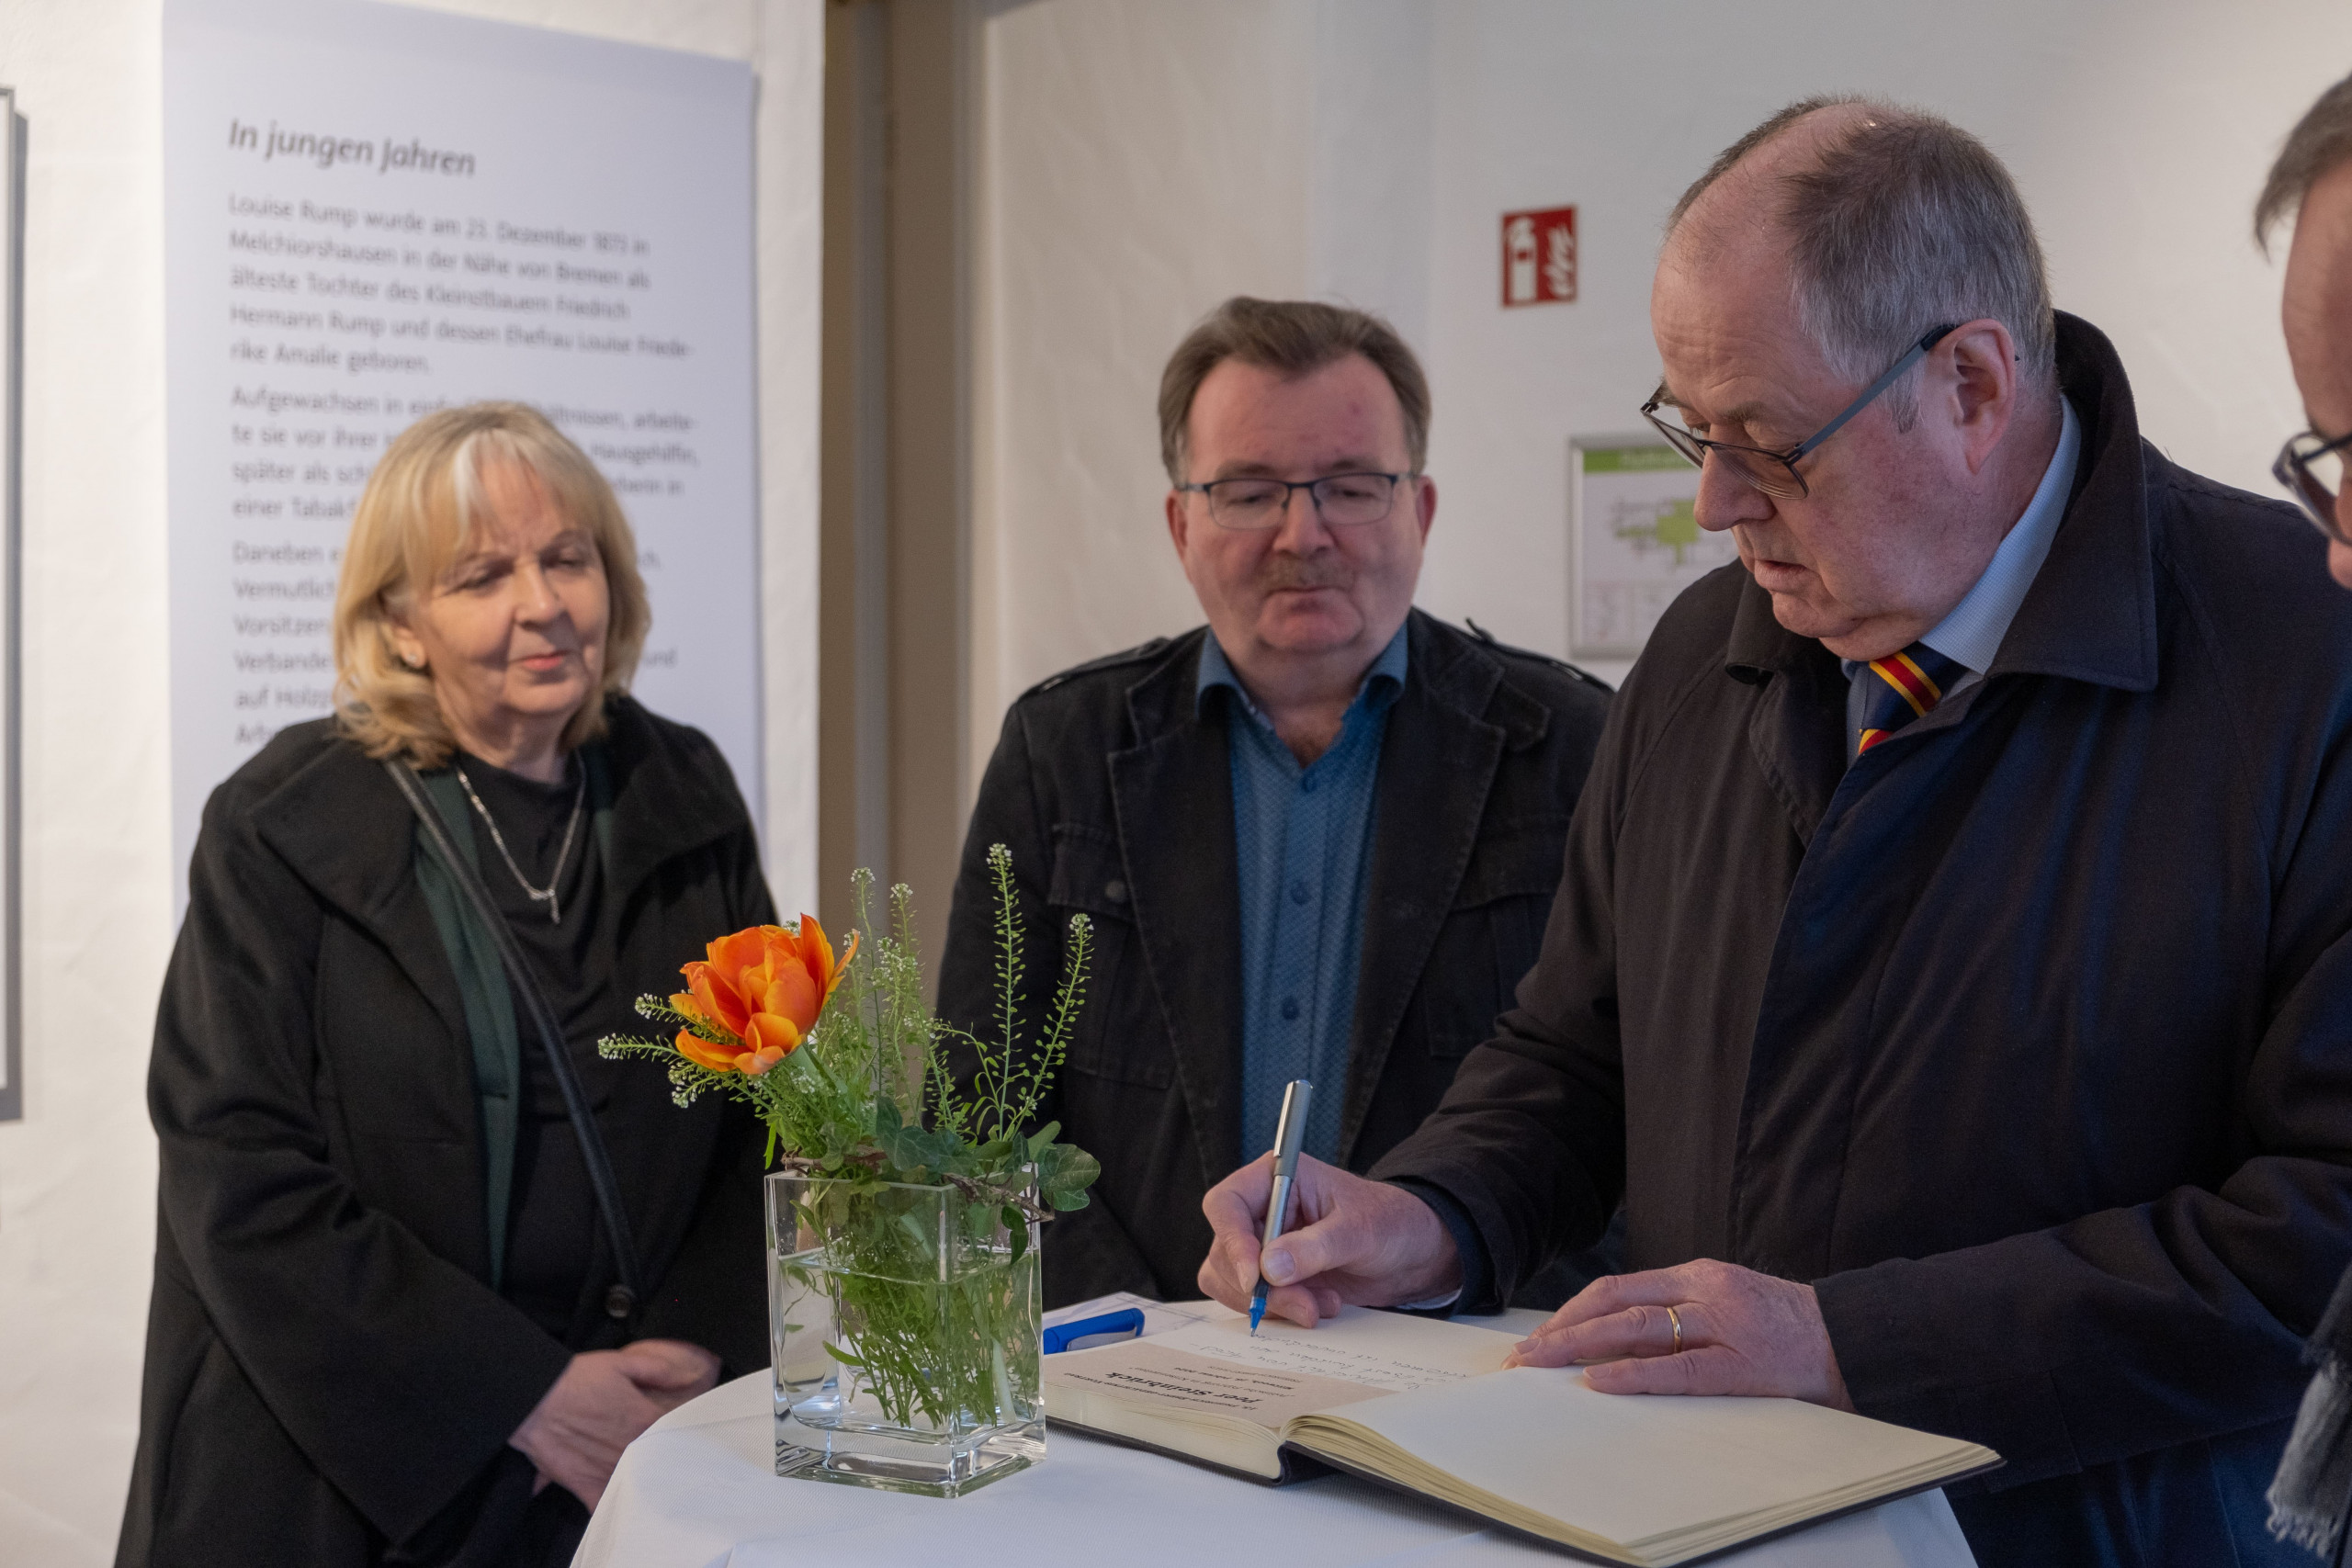 Peer Steinbrück beim Eintrag in das Gästebuch, mit Hannelore Kraft und Bernd Braun